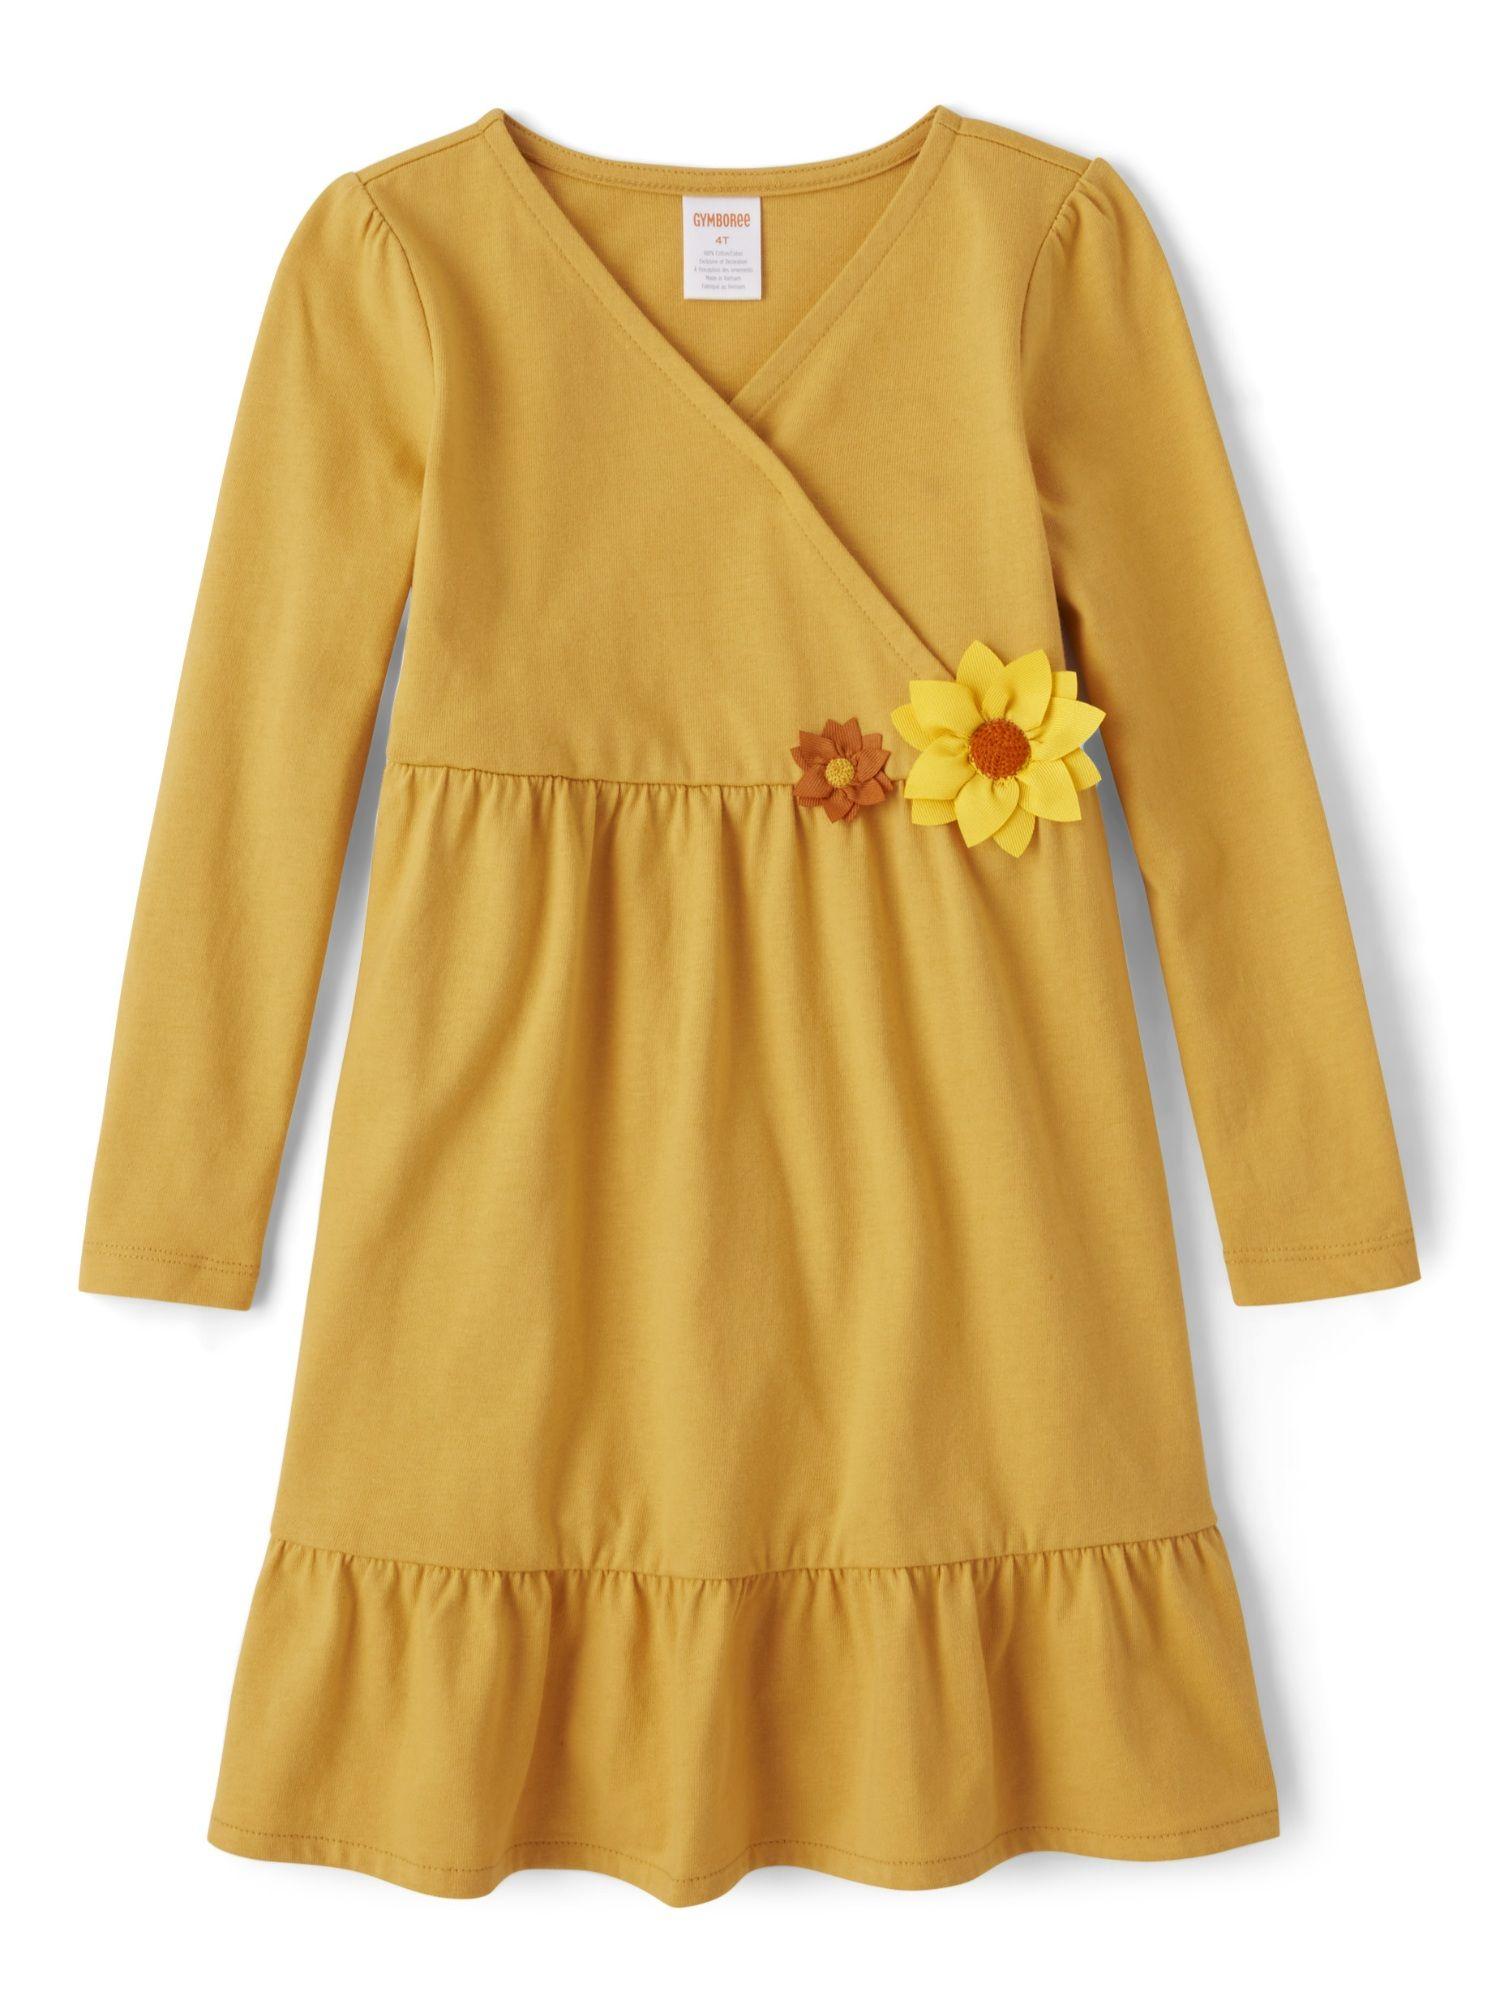 girls yellow v-neck full sleeves ruffle dresses (12-18 months)